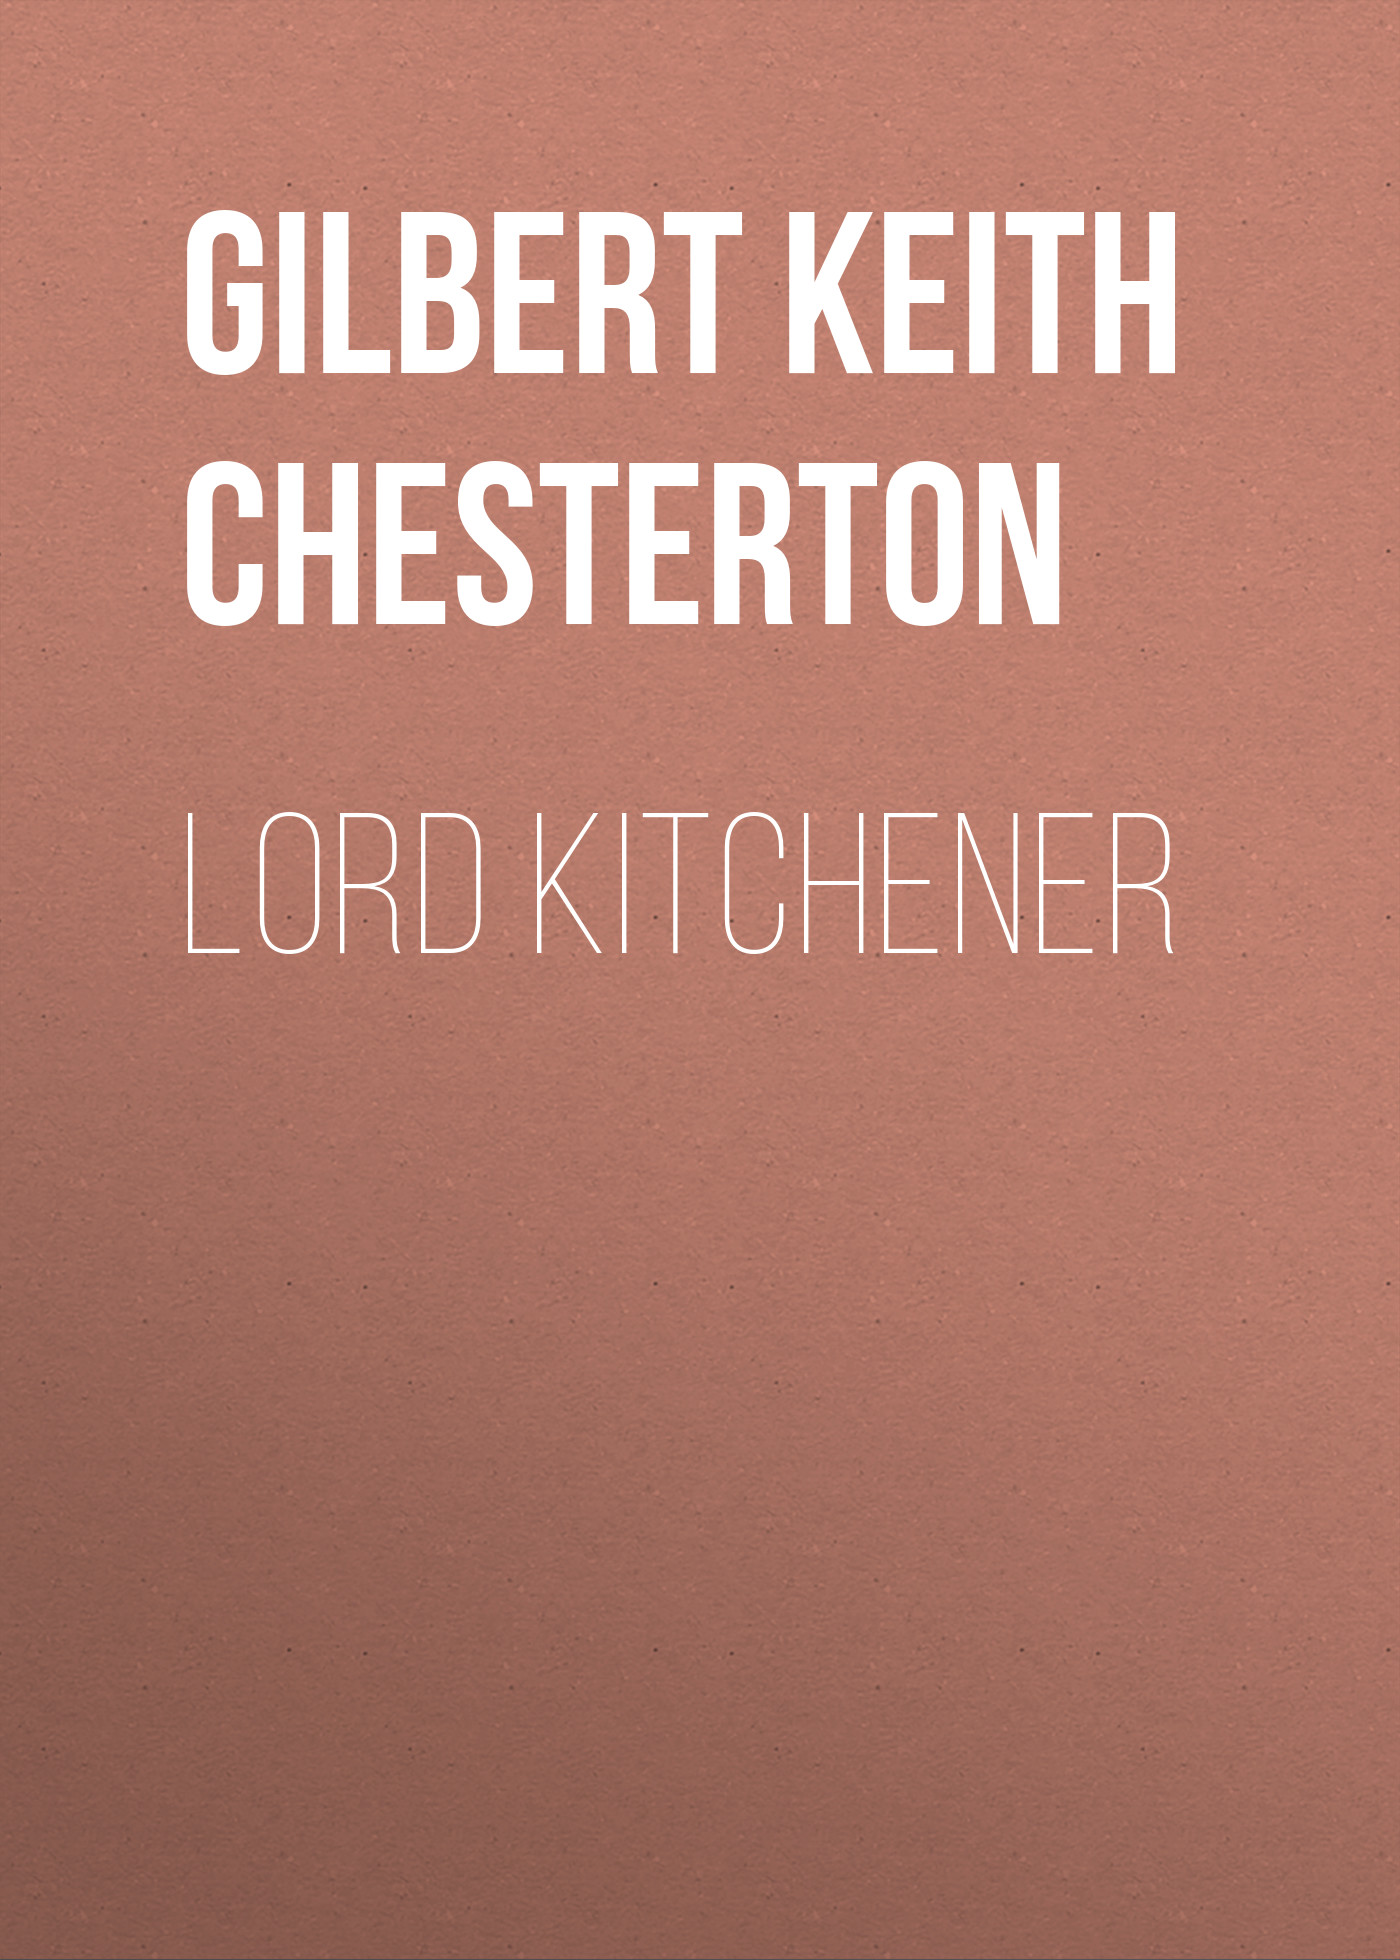 Книга Lord Kitchener из серии , созданная Gilbert Chesterton, может относится к жанру Зарубежная старинная литература, Зарубежная классика. Стоимость электронной книги Lord Kitchener с идентификатором 25020939 составляет 0 руб.